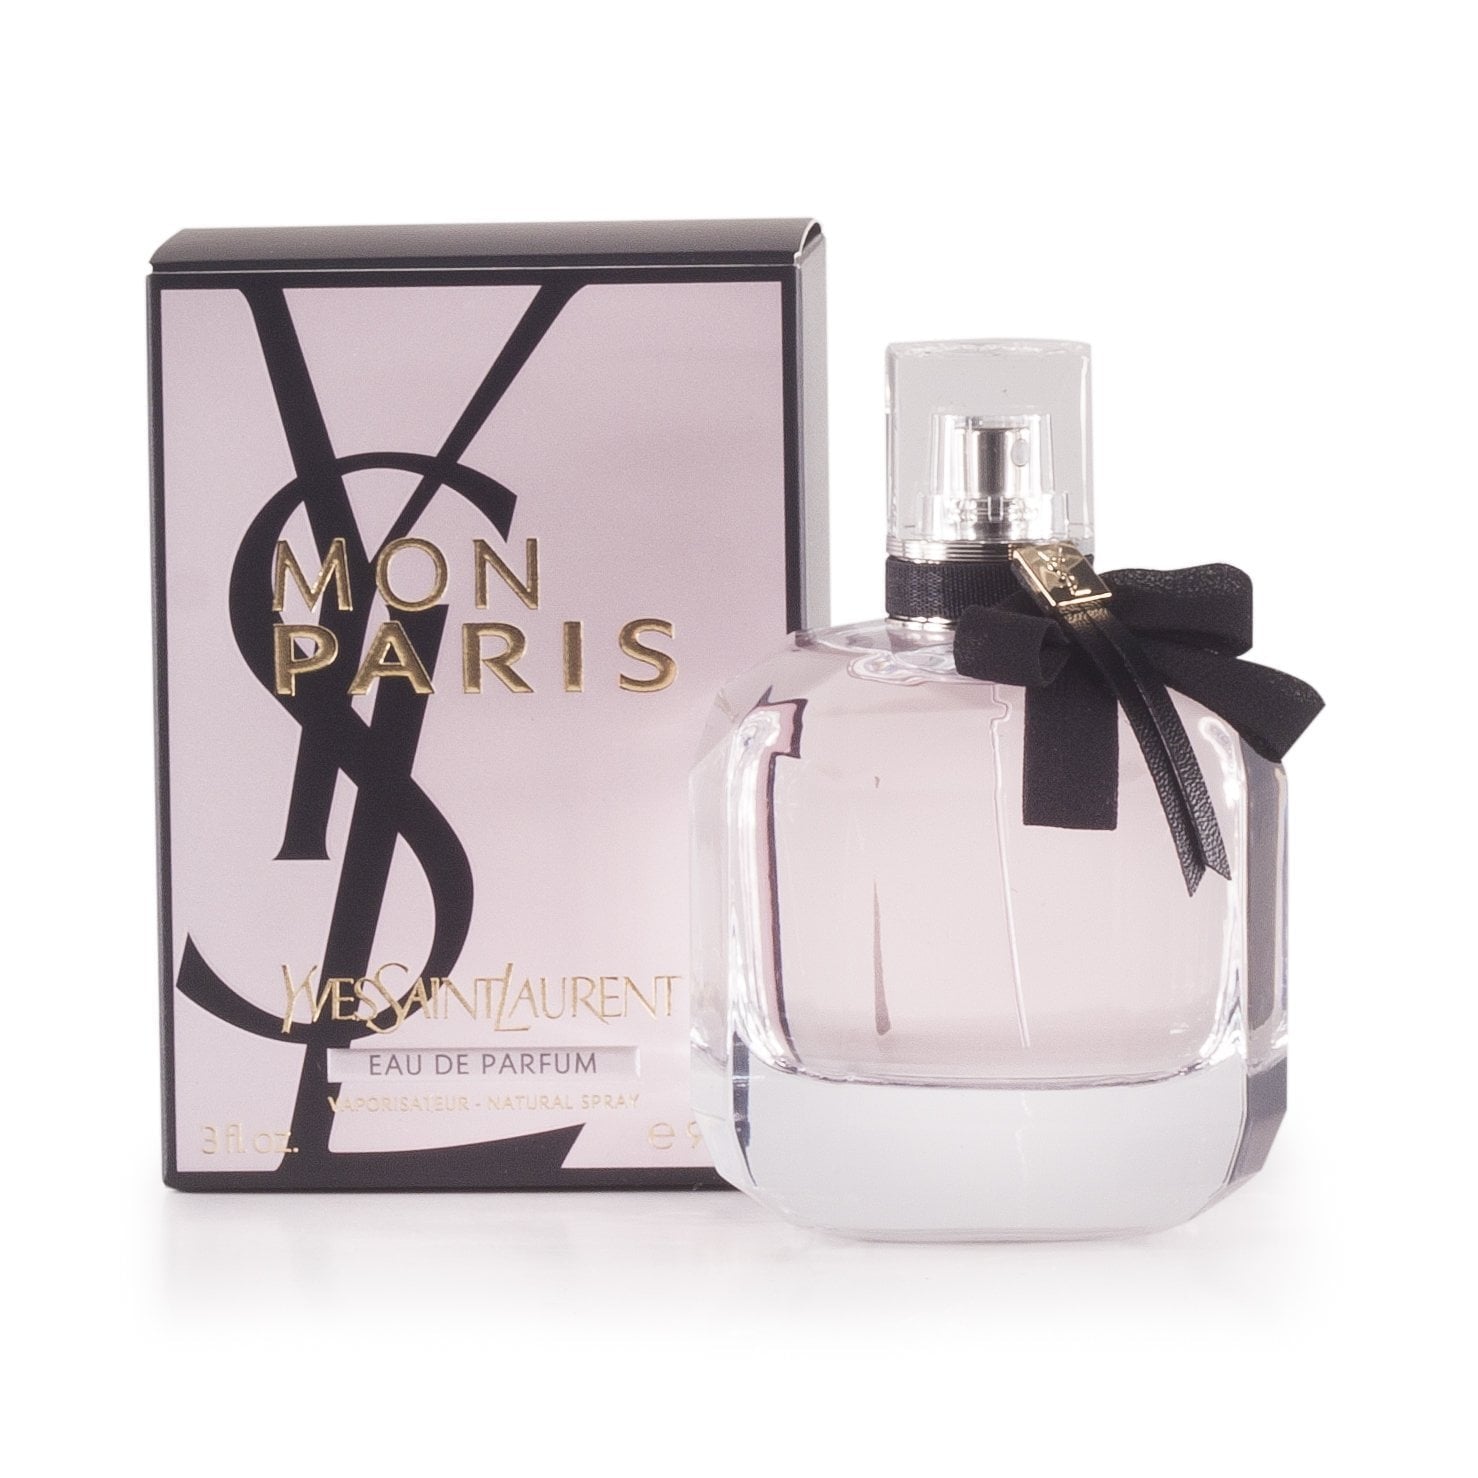 Mon Paris Eau de Parfum Spray for Women by Yves Saint Laurent, Product image 1